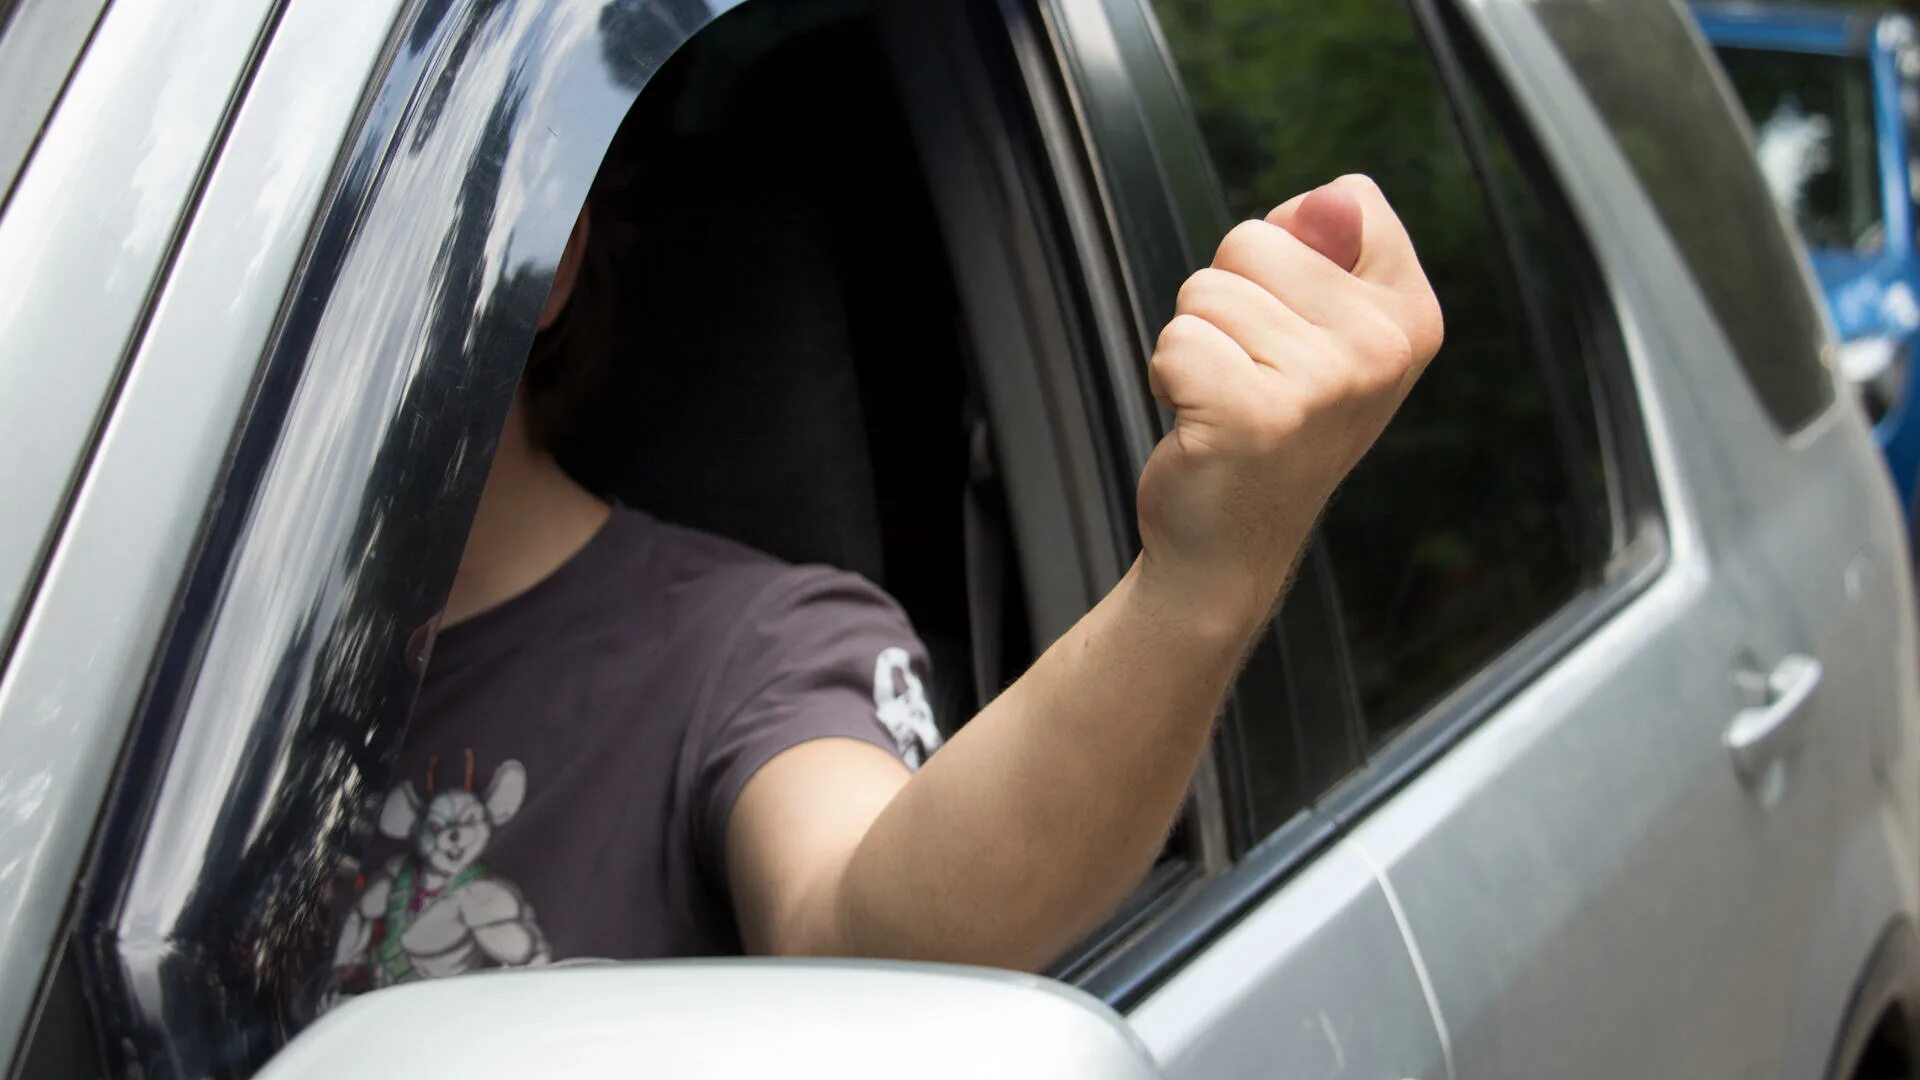 Сигналы водителей на дороге. Жесты водителей на дороге. Рука из окна машины. Жесты водителей на дороге руками. Палец из окна машины.